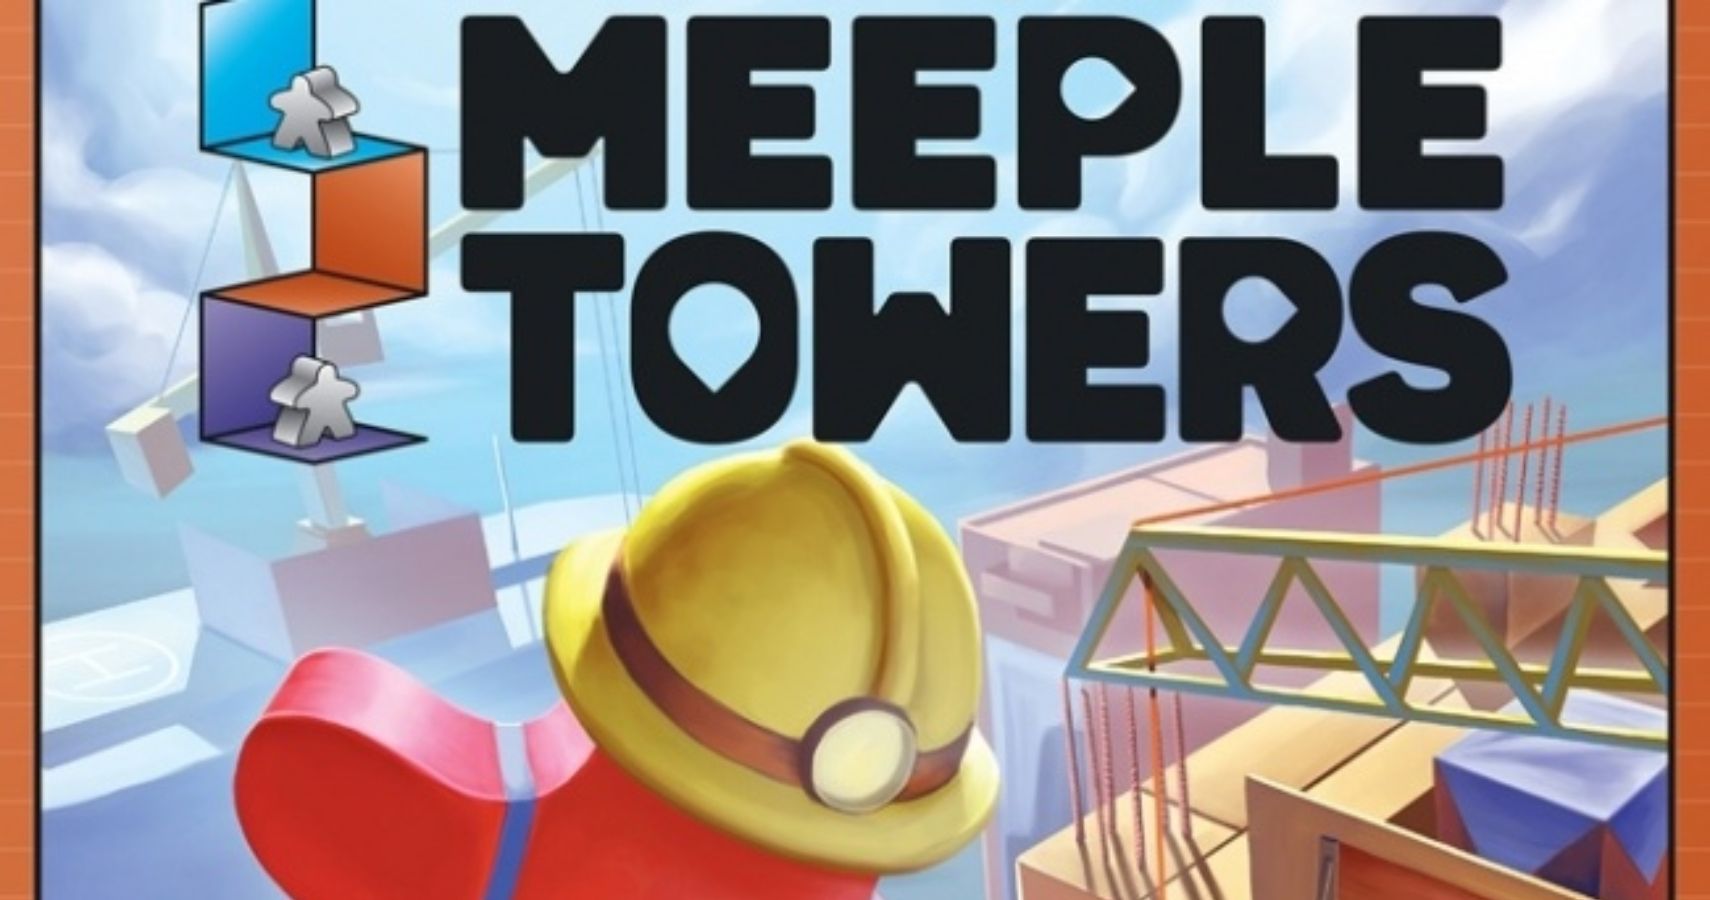 meeple towers